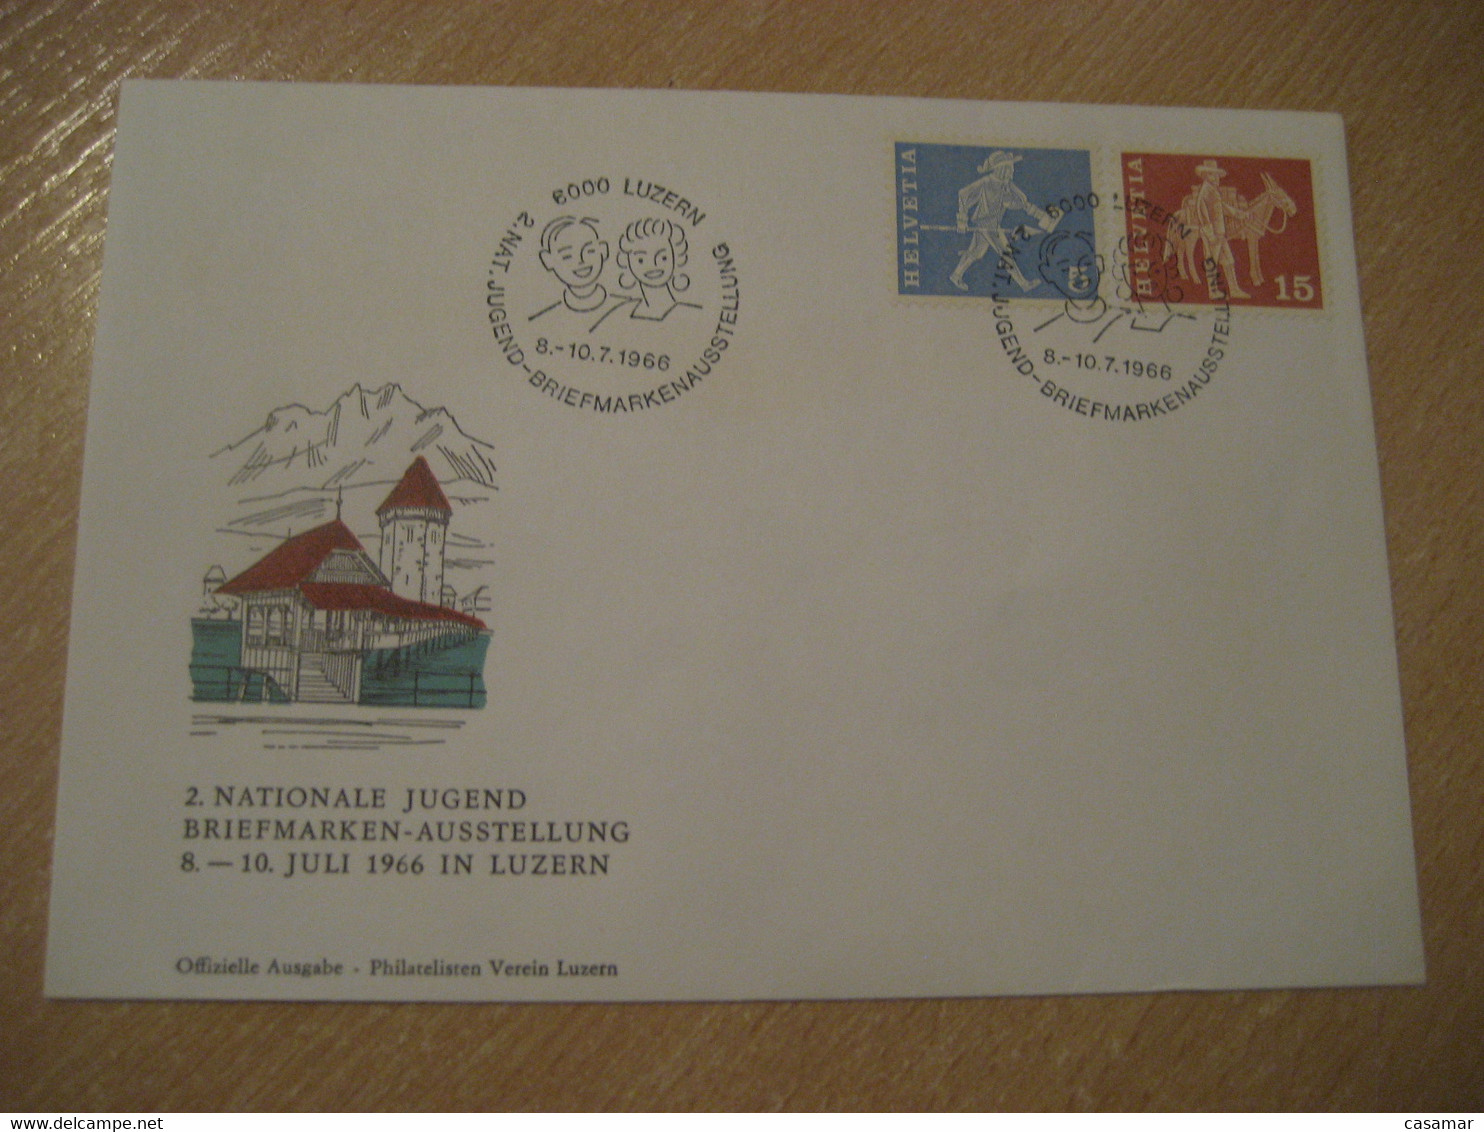 LUZERN 1966 Donkey Donkeys Stamp Jugend Briefmarken Cancel Bridge Water Tower Cover SWITZERLAND Lucerne - Burros Y Asnos